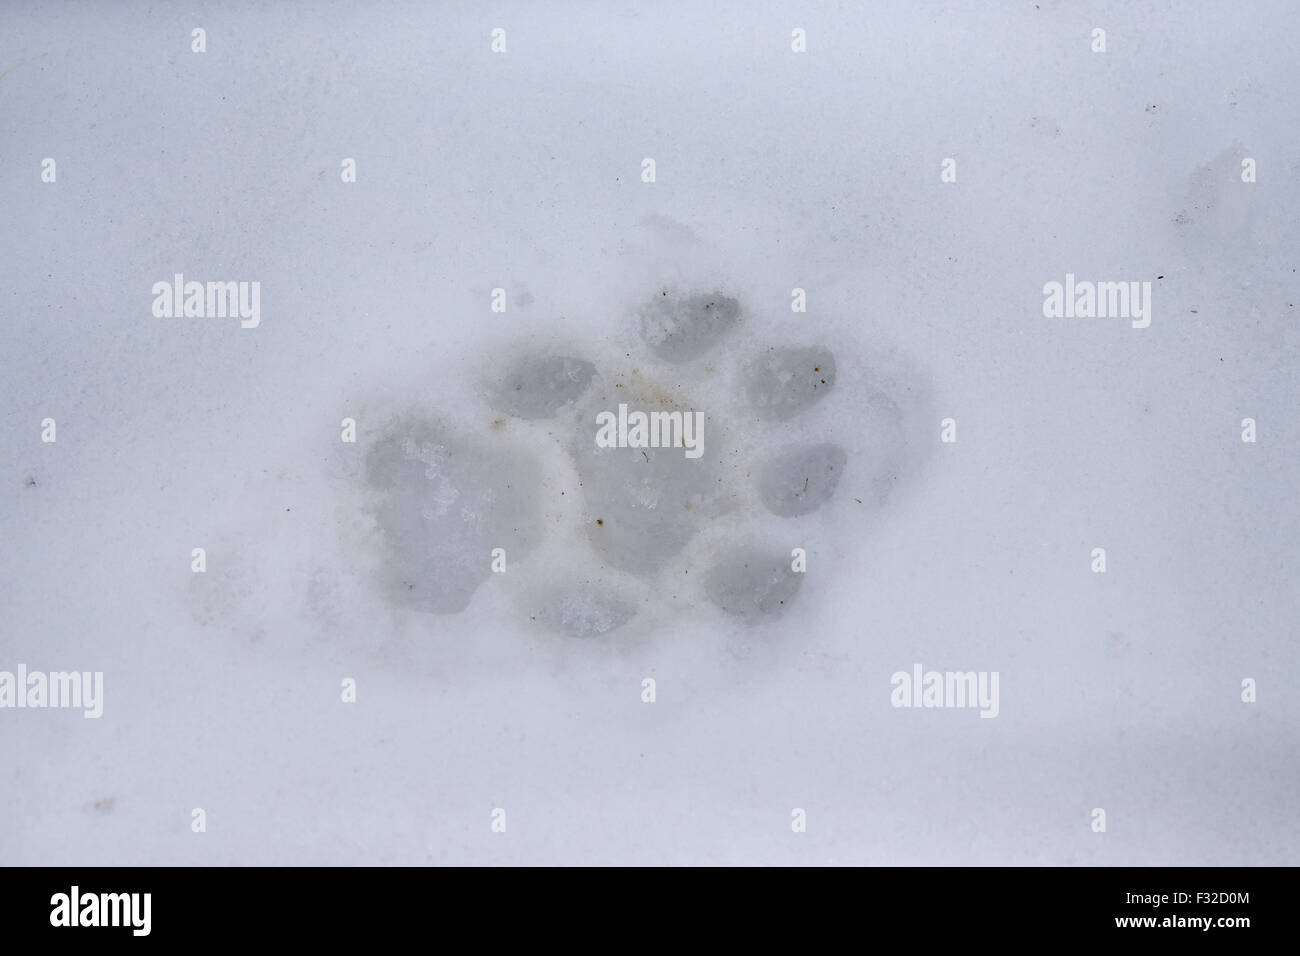 puma footprint